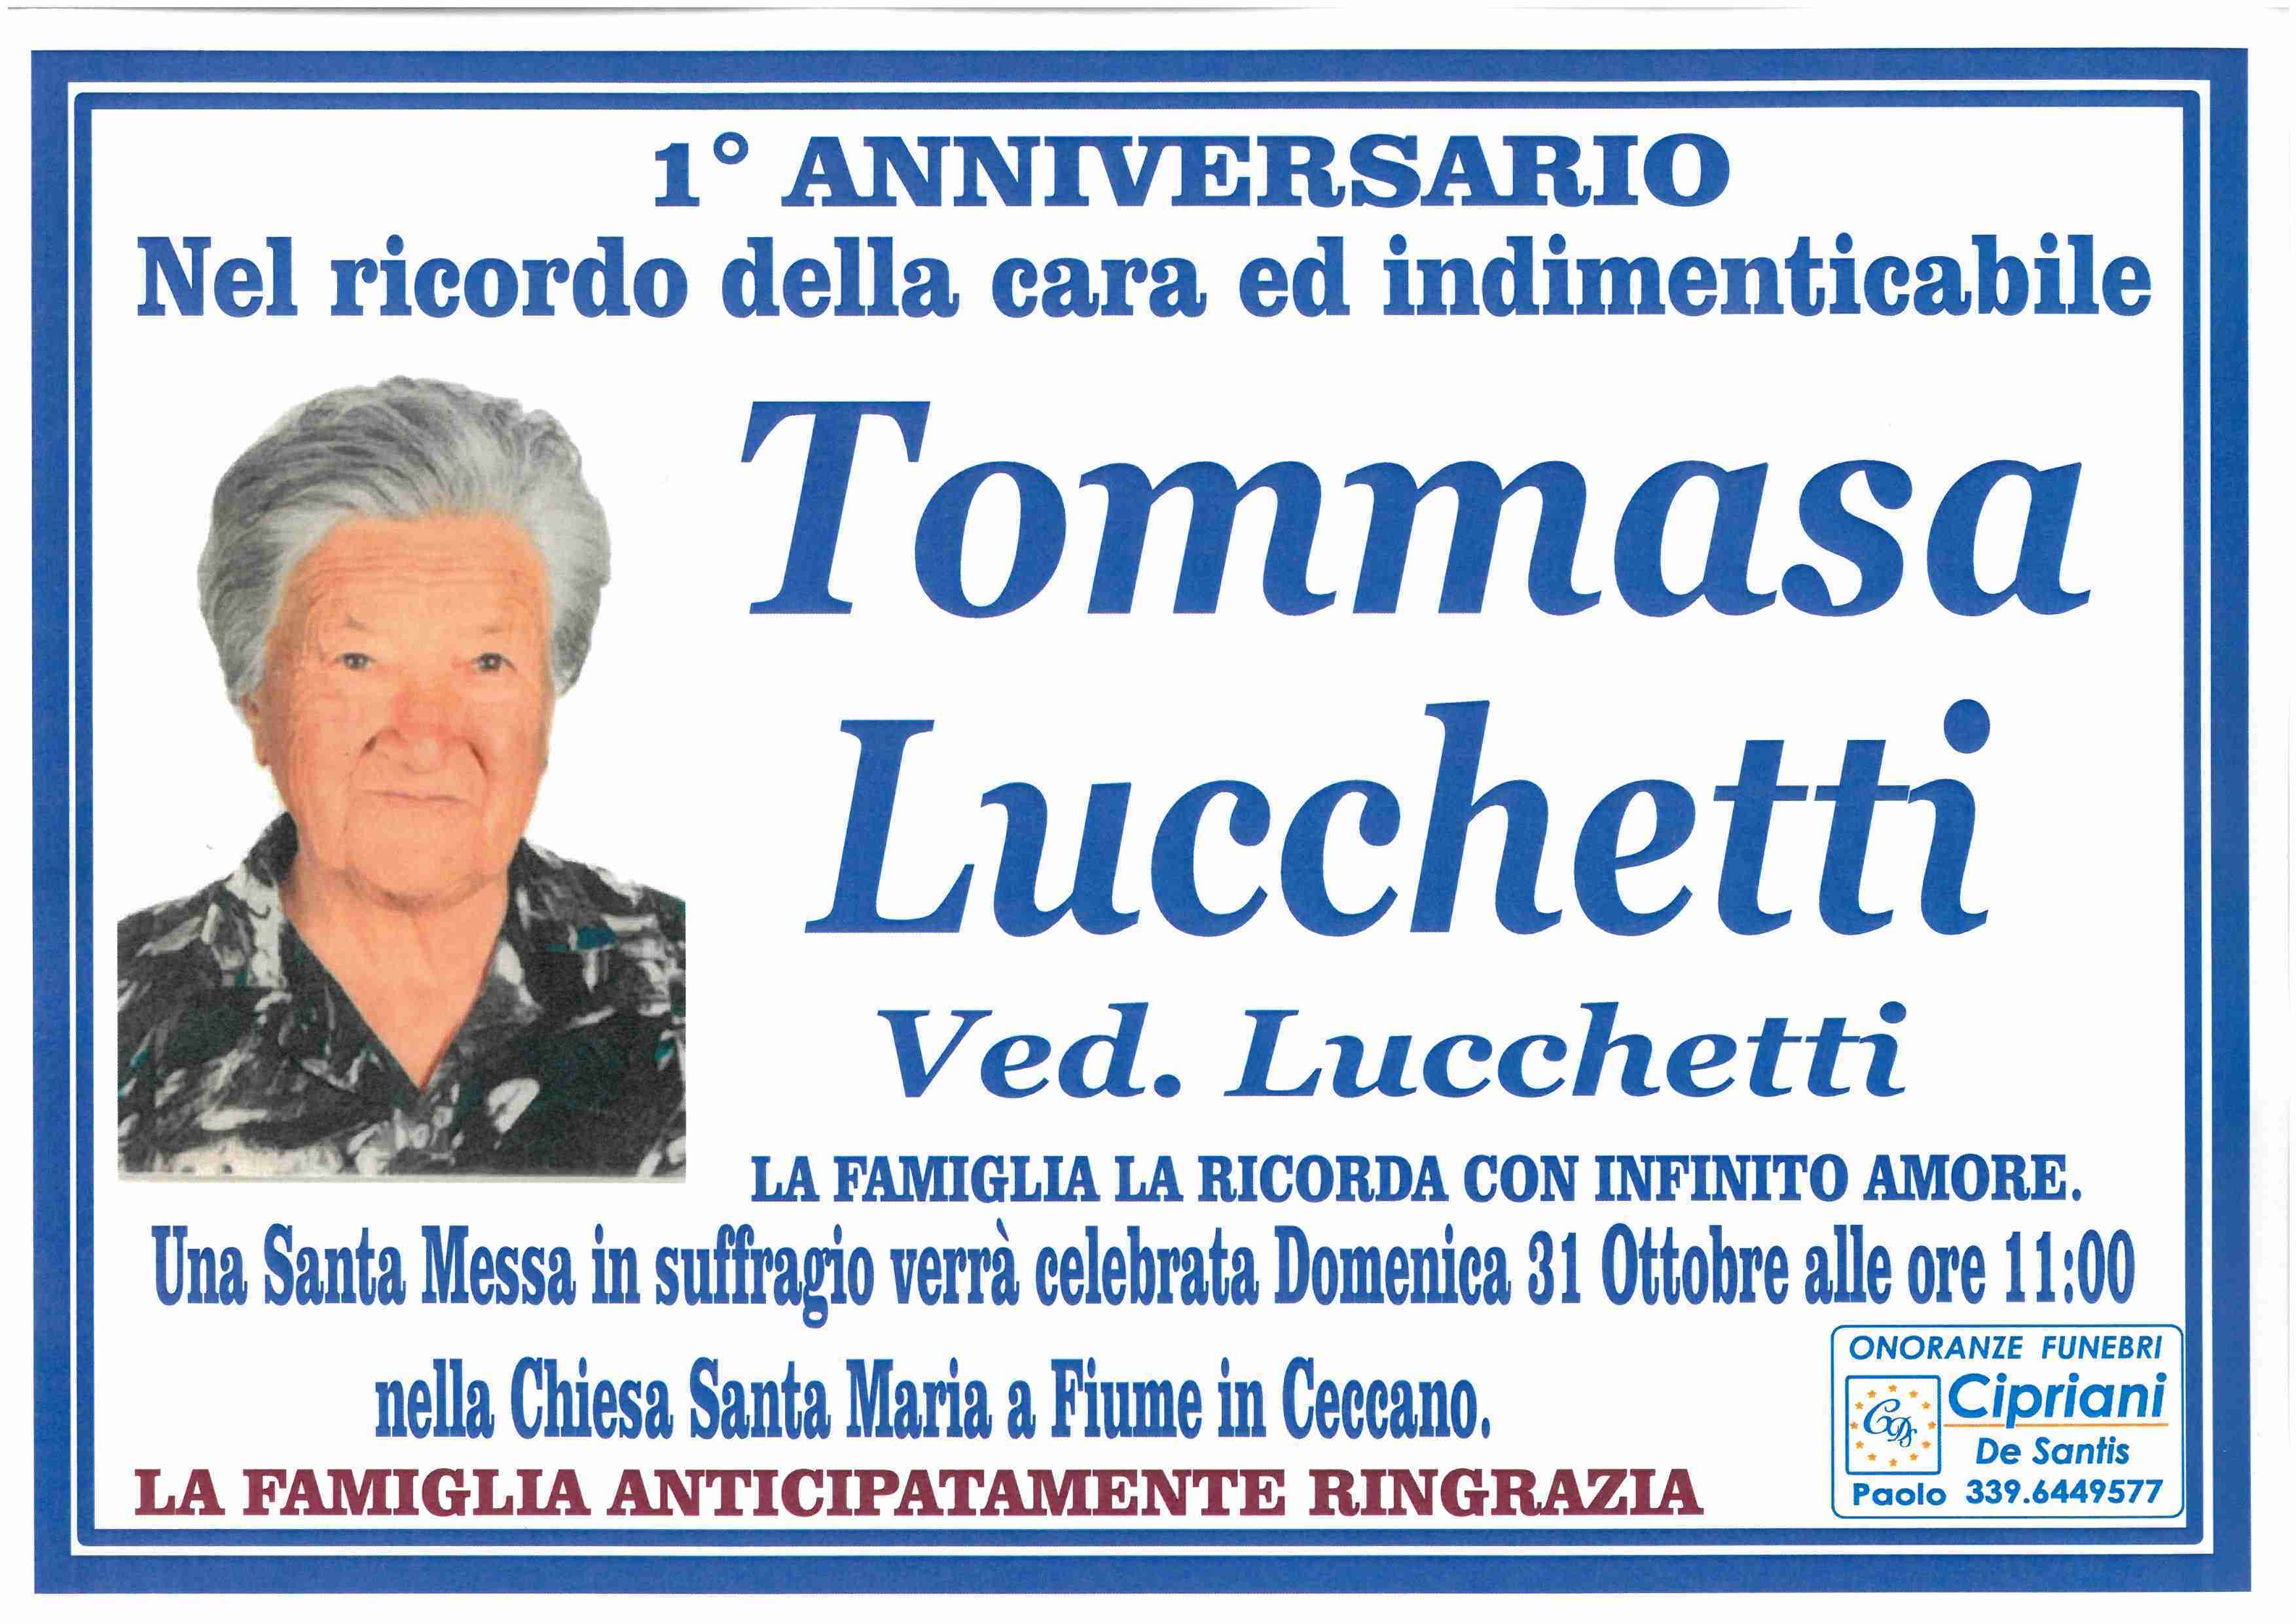 Tommasa Lucchetti